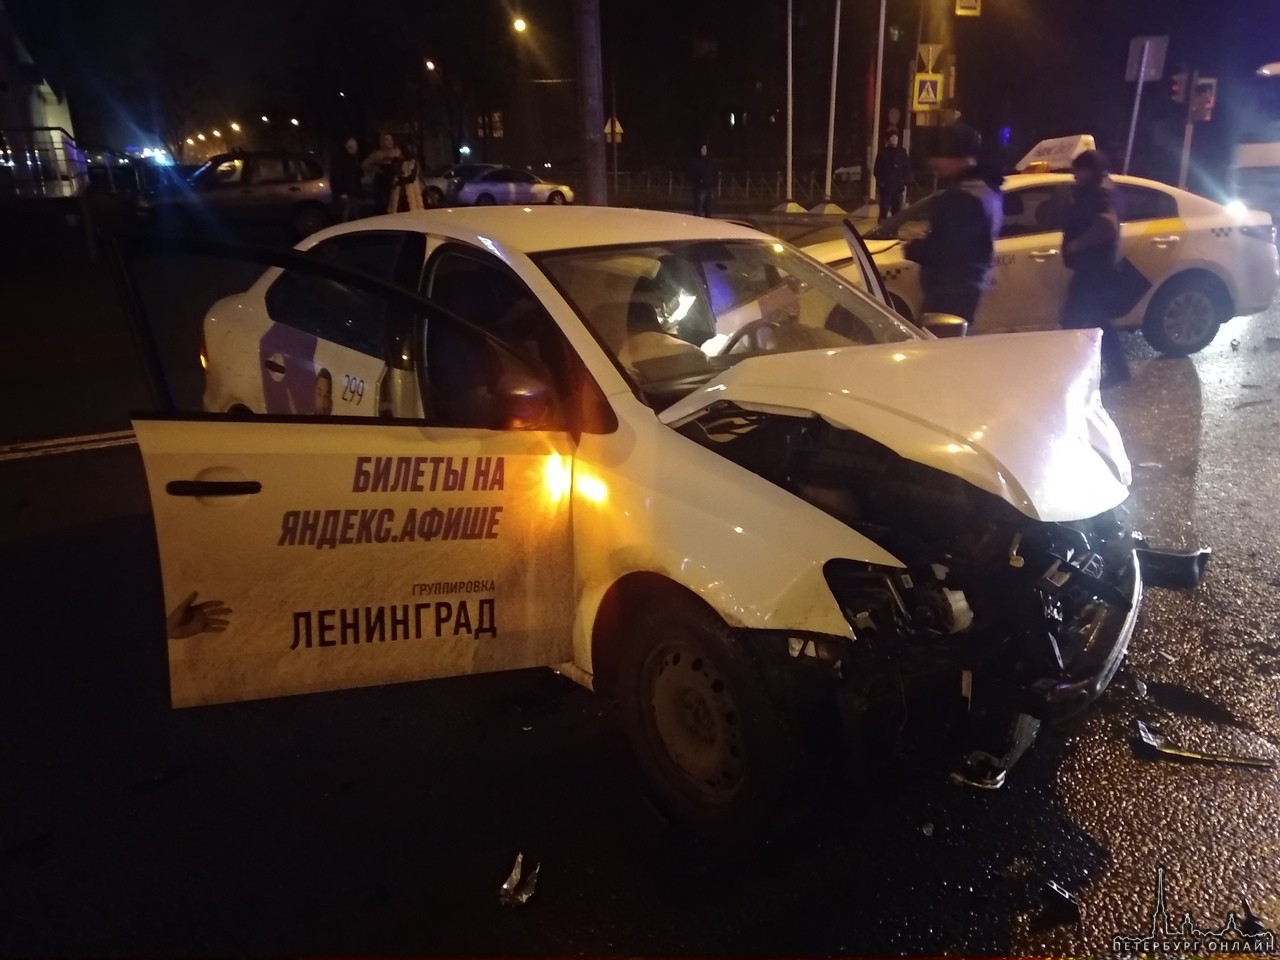 Авария на Кантемировской 37. 2 такси и Mercedes, последний пострадал меньше всех, а не виновный такс...